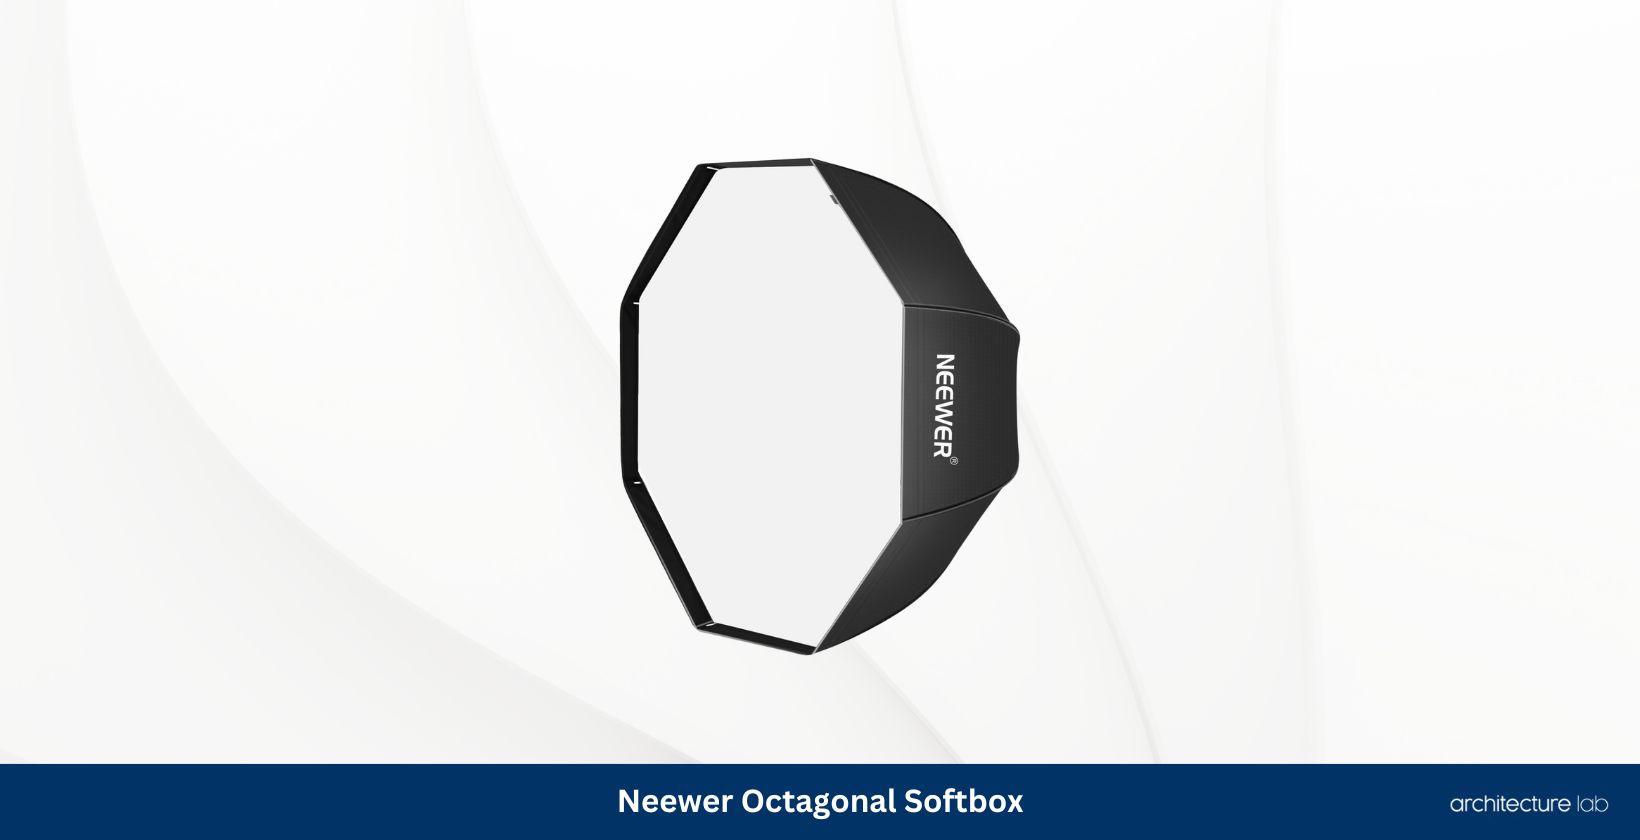 Neewer octagonal